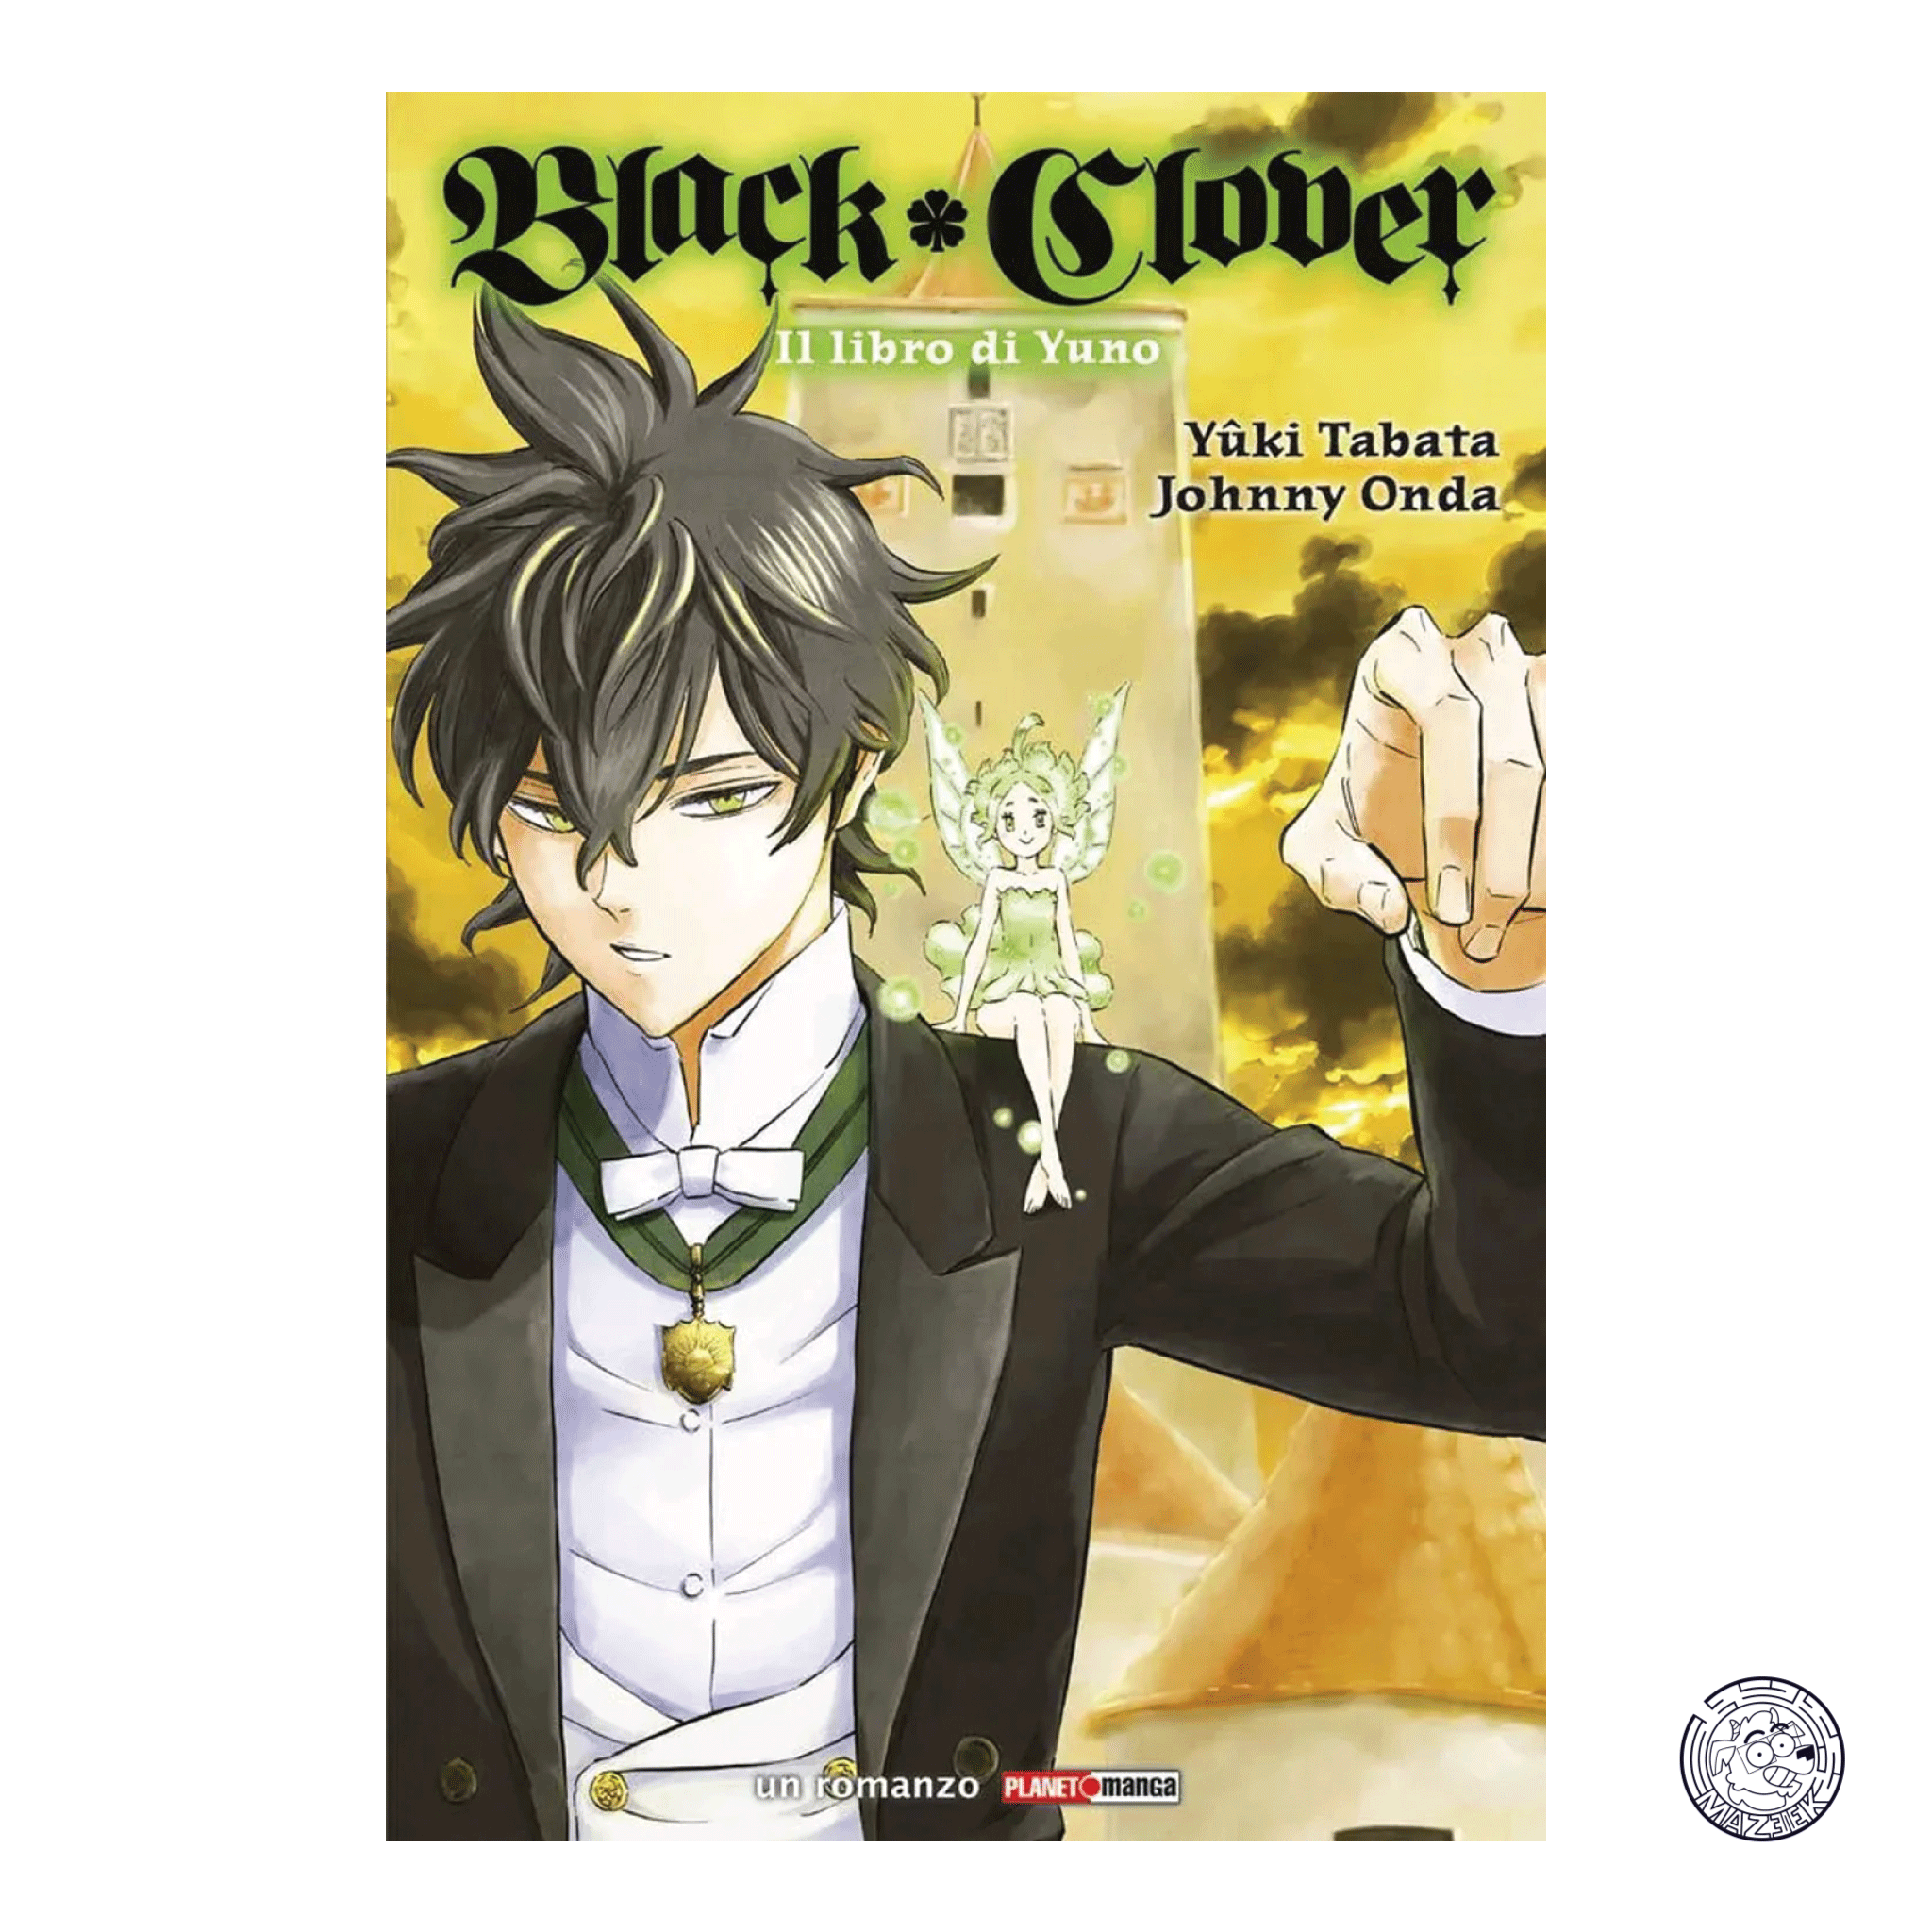 Black Clover, il Libro di Yuno